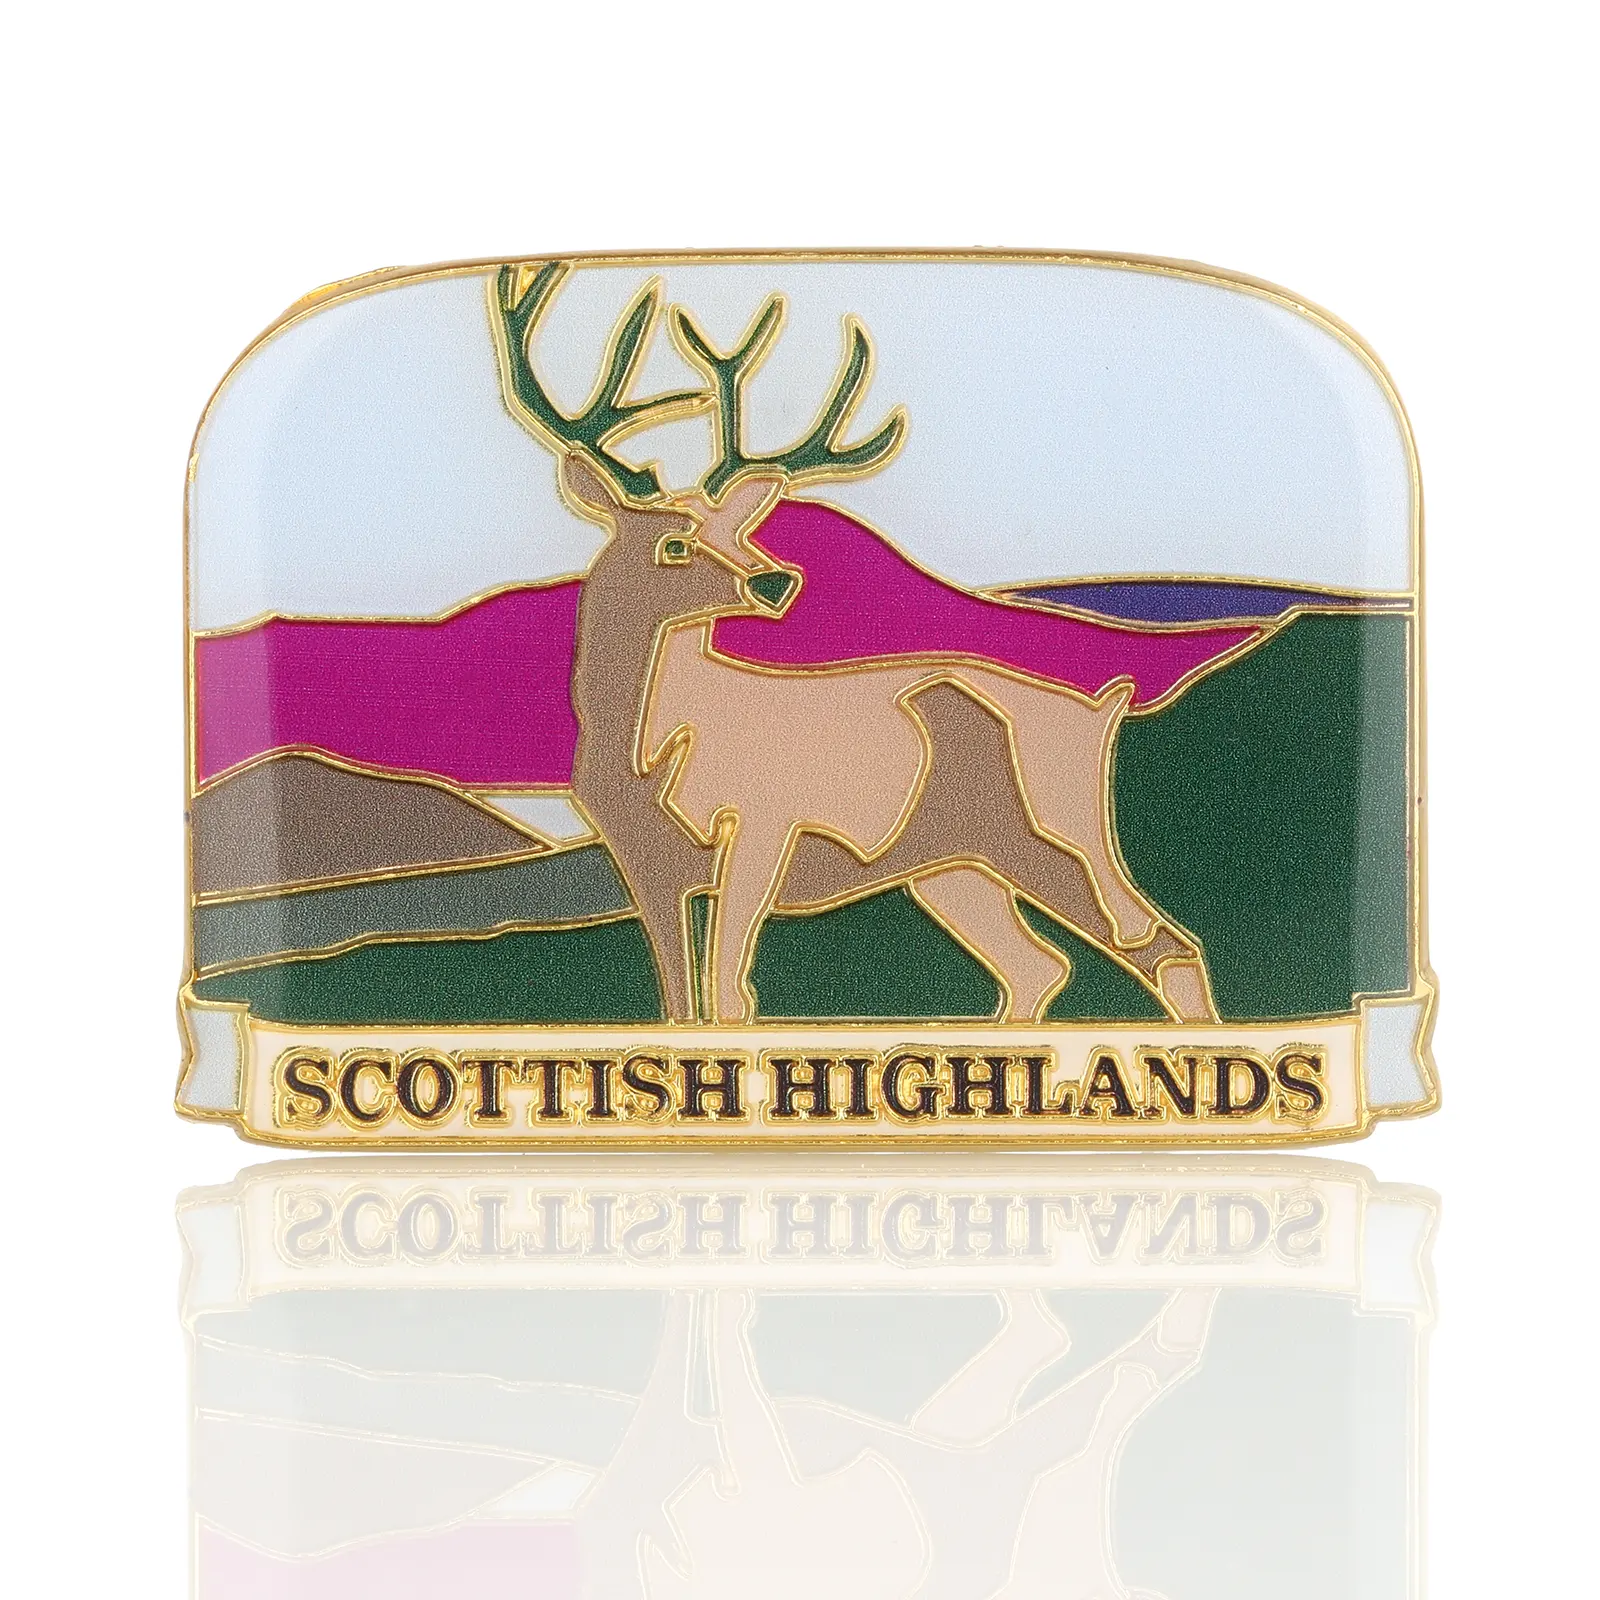 Scottish Highlands Deko-Magnet / Kühlschrankmagnet aus Schottland - Metall & Emaille